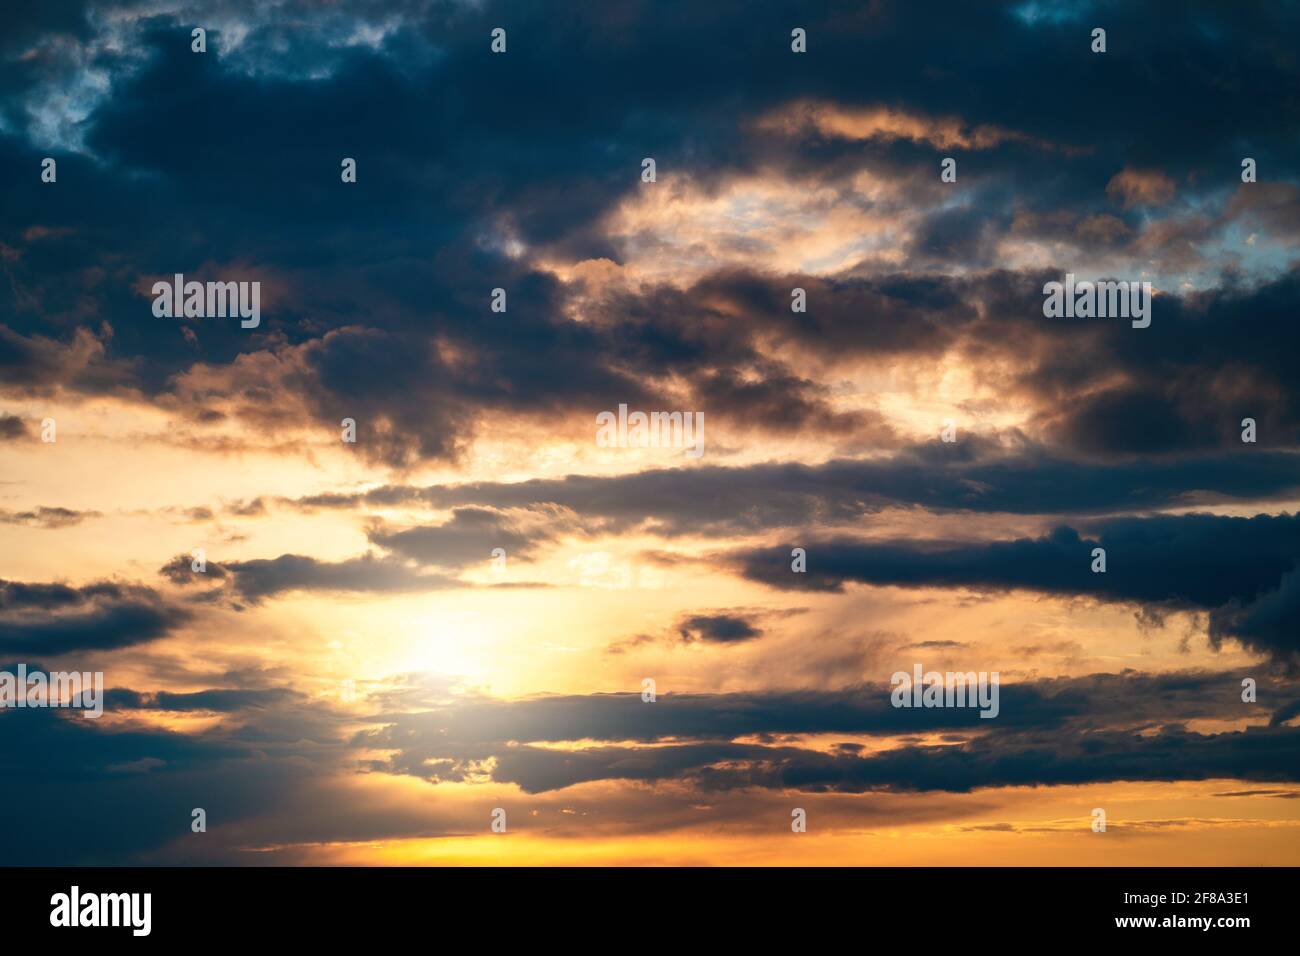 Dramatischer Sonnenuntergang wolkig Himmel mit blauen Wolken als abstrakt schöne Wolkenlandschaft Hintergrund. Stockfoto